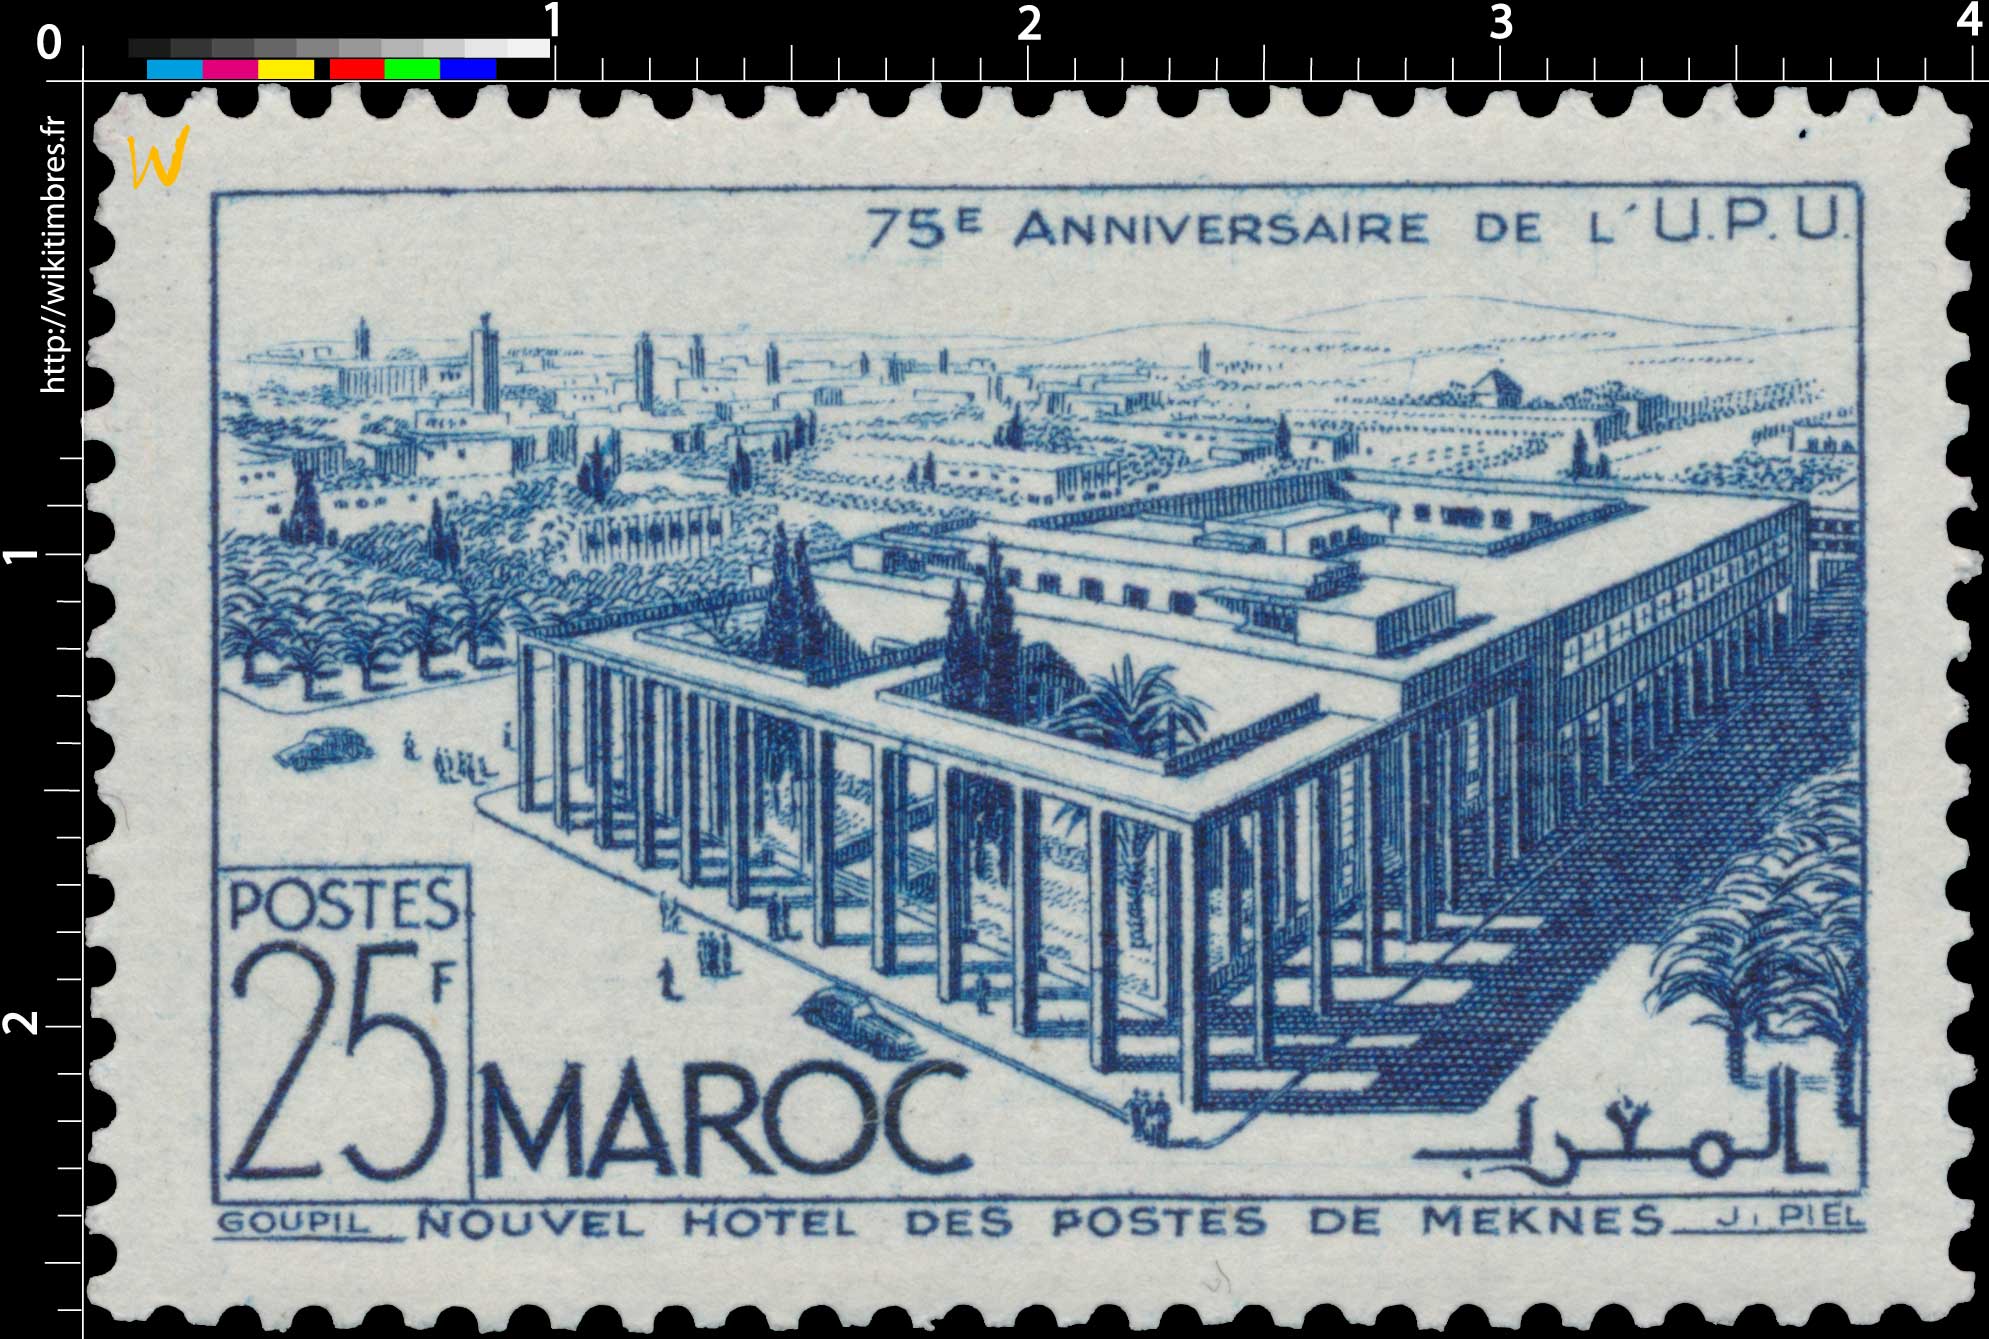 1949 Maroc - Nouvel Hôtel des Postes de Meknès